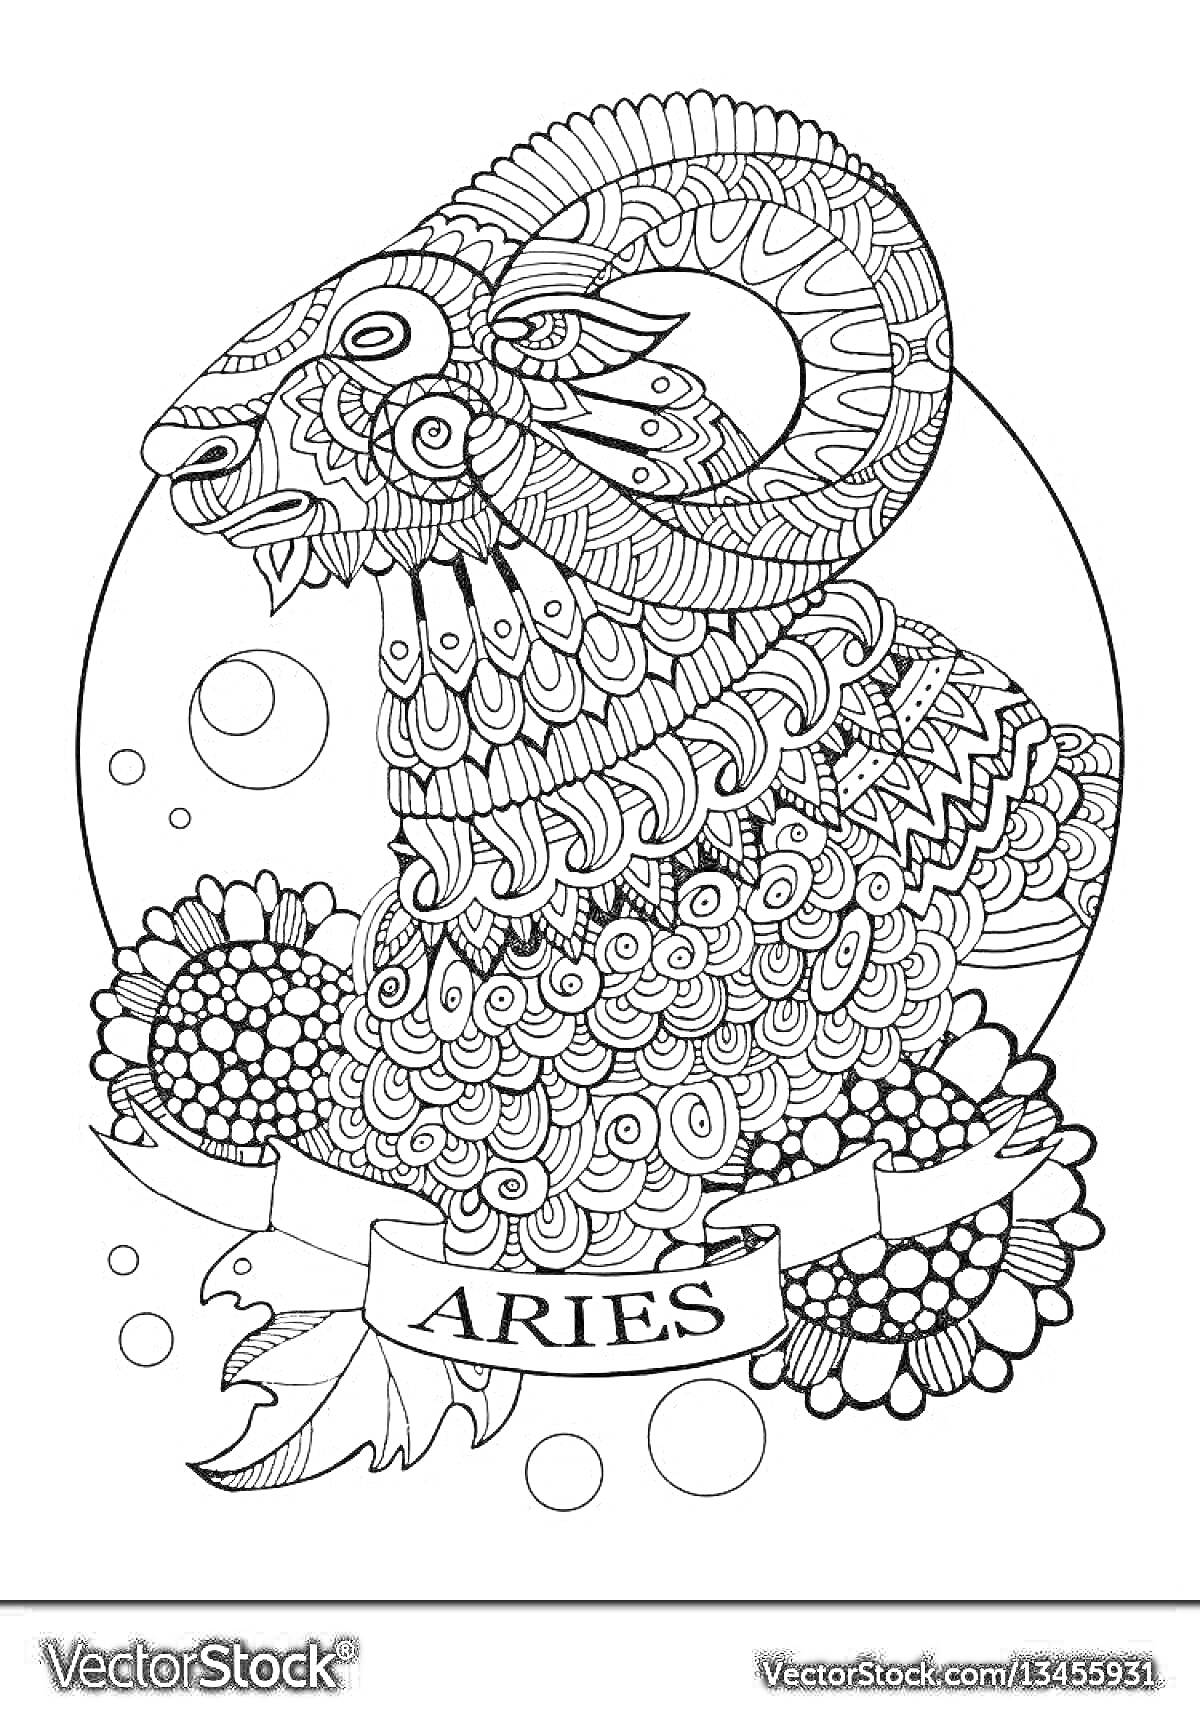 Раскраска Овен. Антистресс раскраска с изображением овна, окантованный кругом, орнамент цветы, лента с надписью 